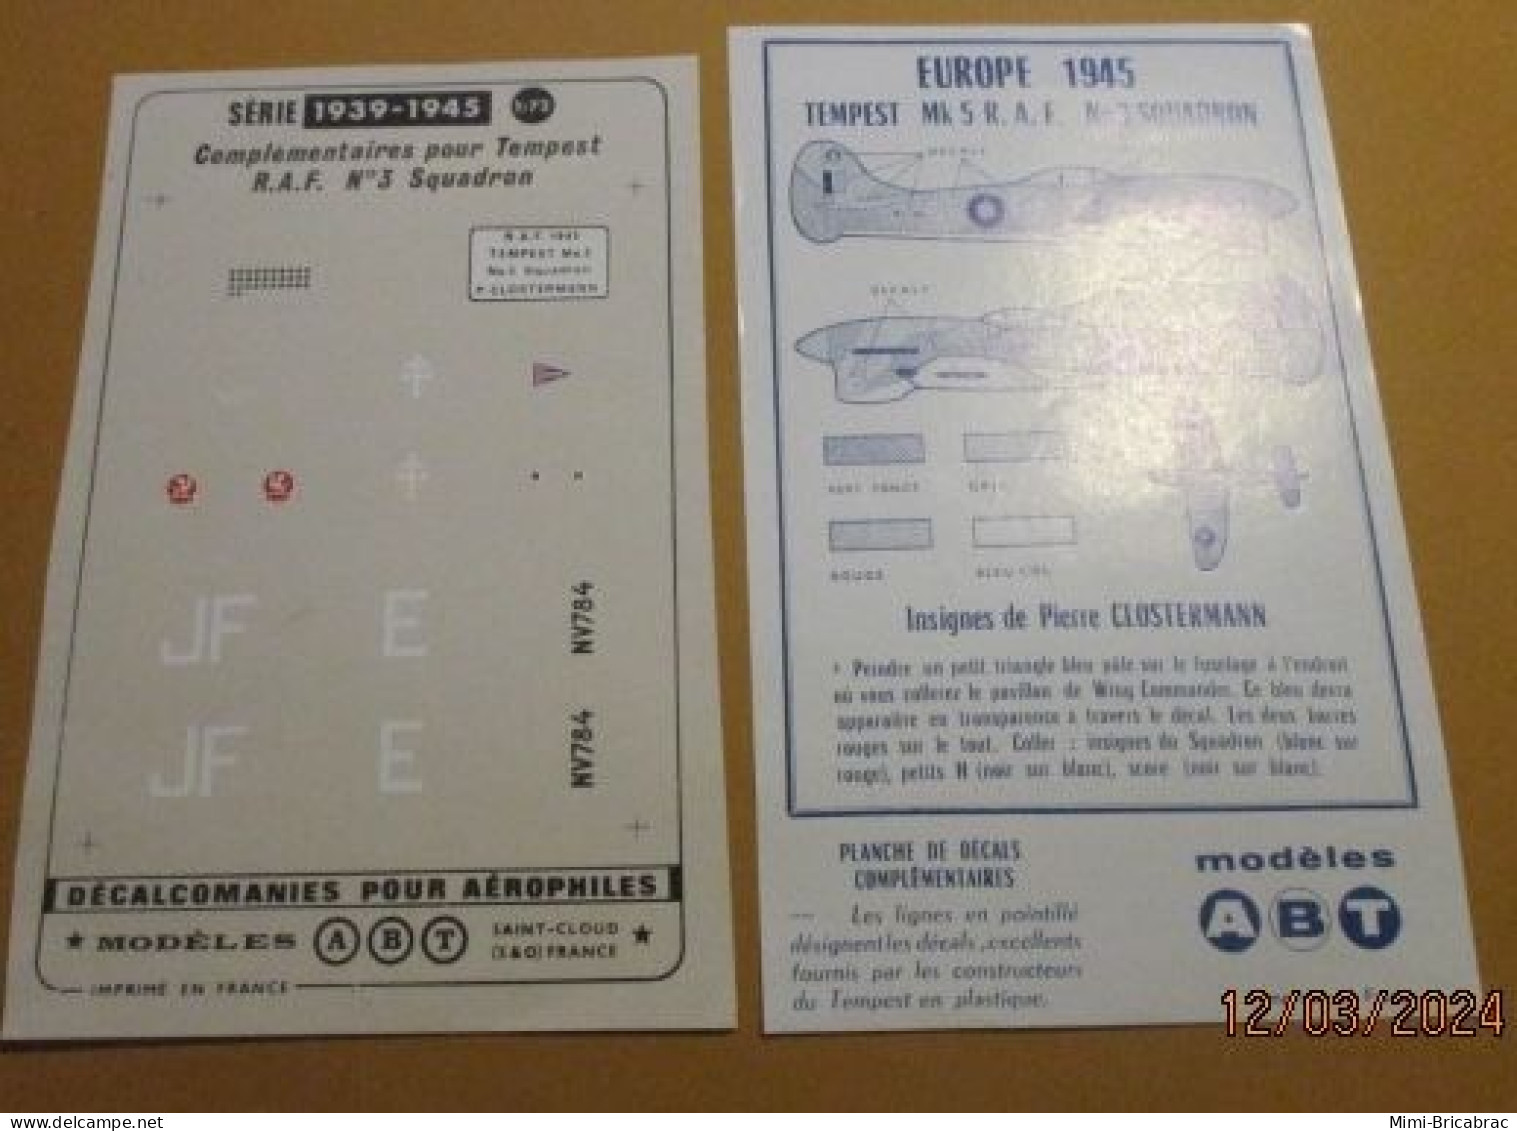 DEC24 : RARE Planche Décals ABT 1/72 ROYAL AIR FORCE 1945 LE TEMPEST DE PIERRE CLOSTERMANN - Airplanes